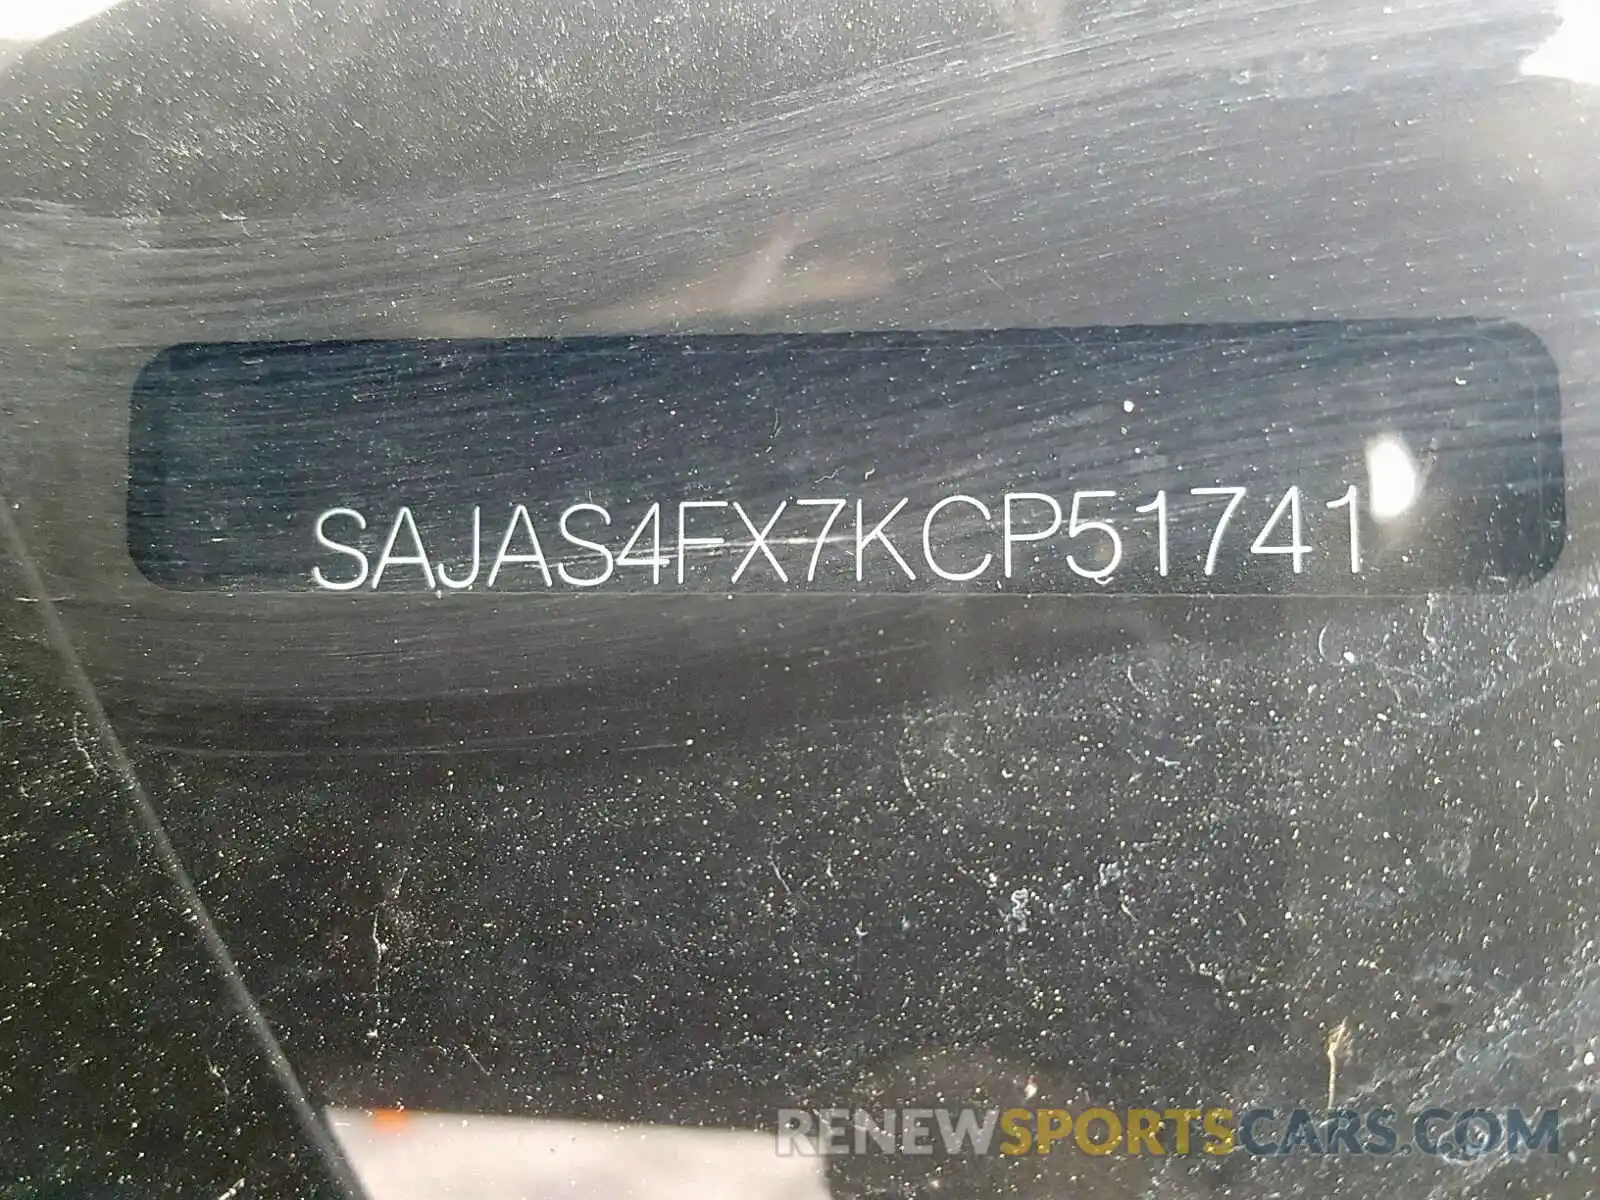 10 Photograph of a damaged car SAJAS4FX7KCP51741 JAGUAR XE 2019